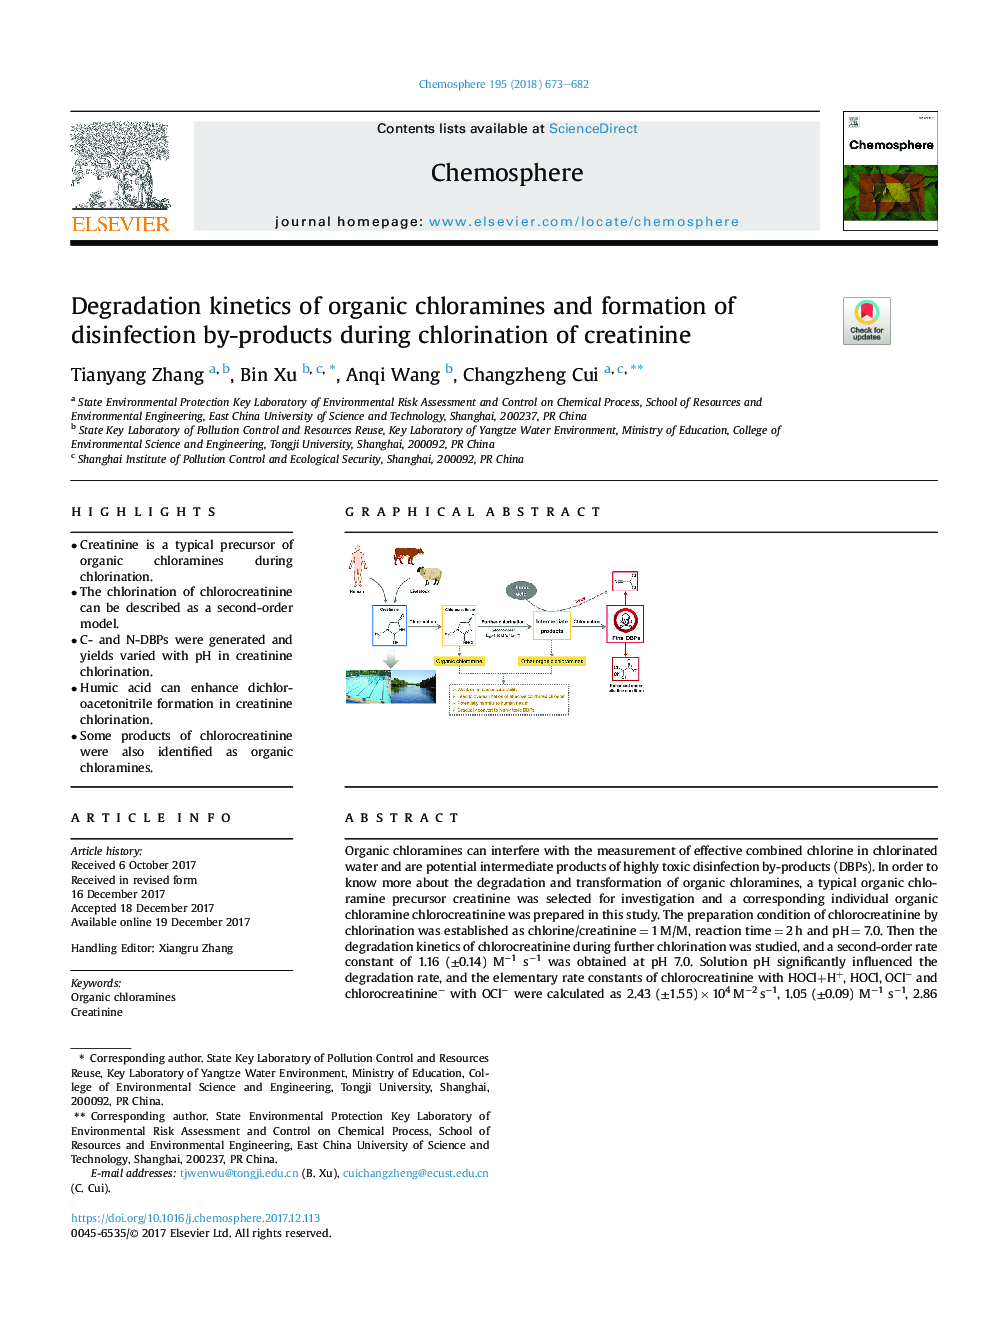 سینتیک تخریب کلرامین آلی و تشکیل محصولات ضدعفونی کننده در طول کلرسیون کراتینین 